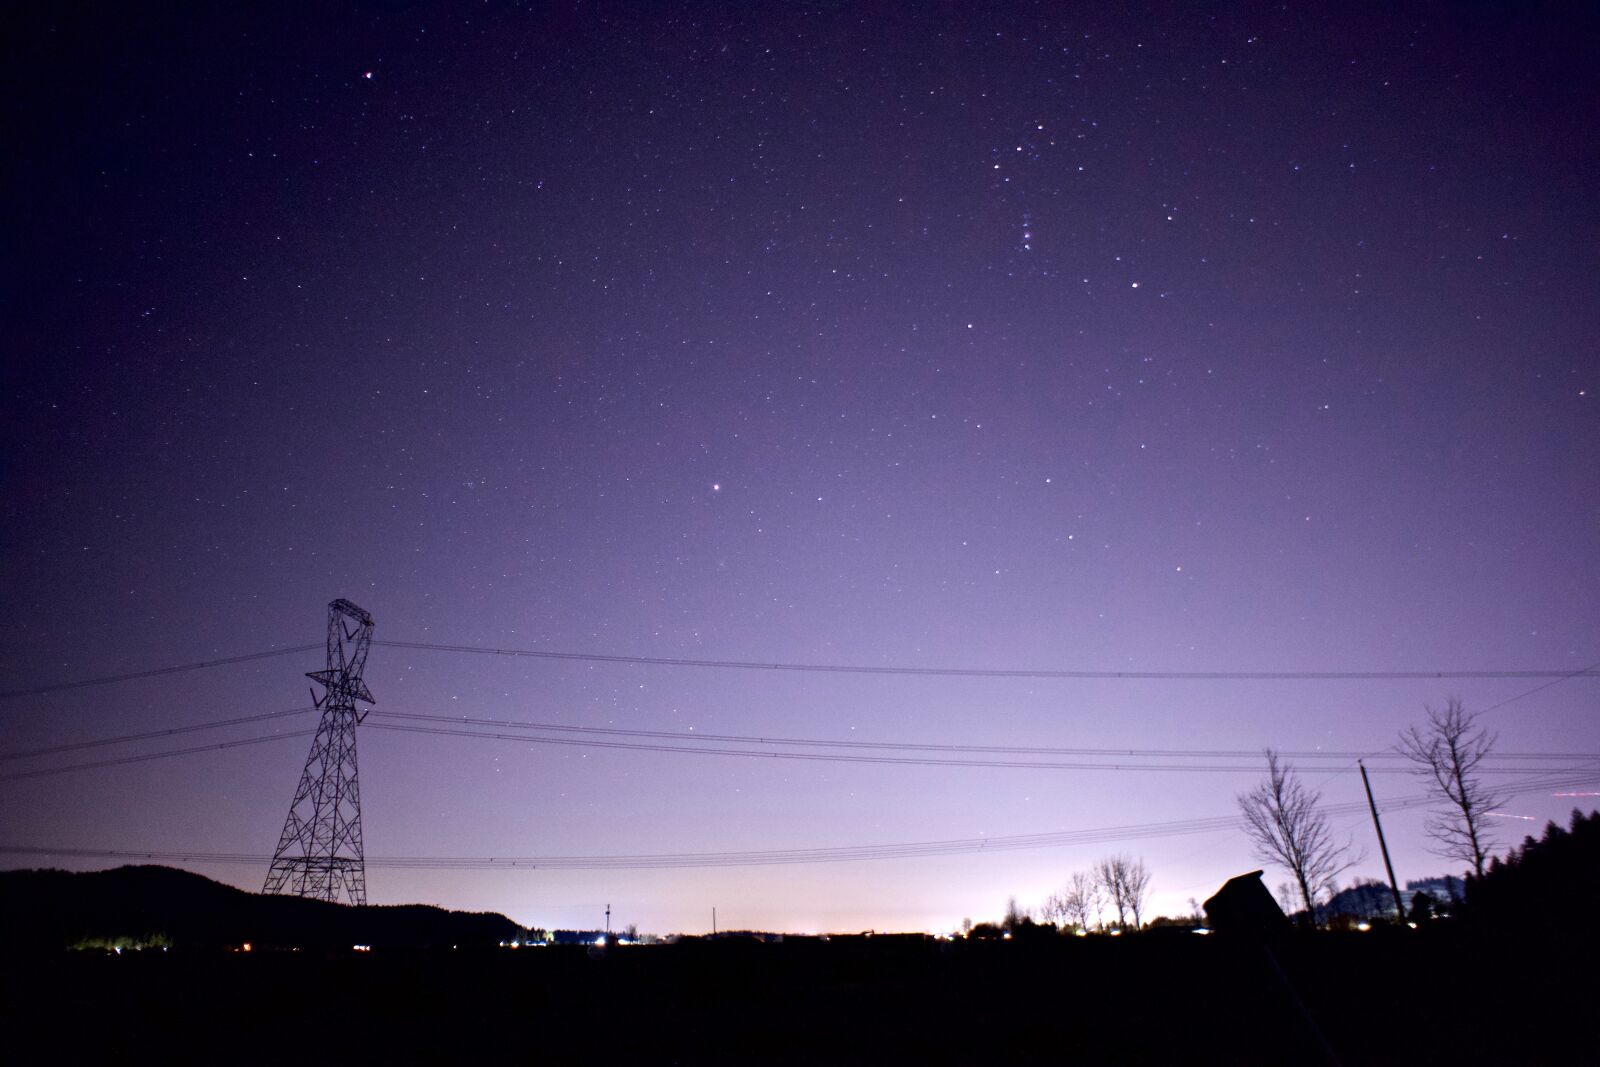 Sony E 16mm F2.8 sample photo. Night sky, night, sky photography